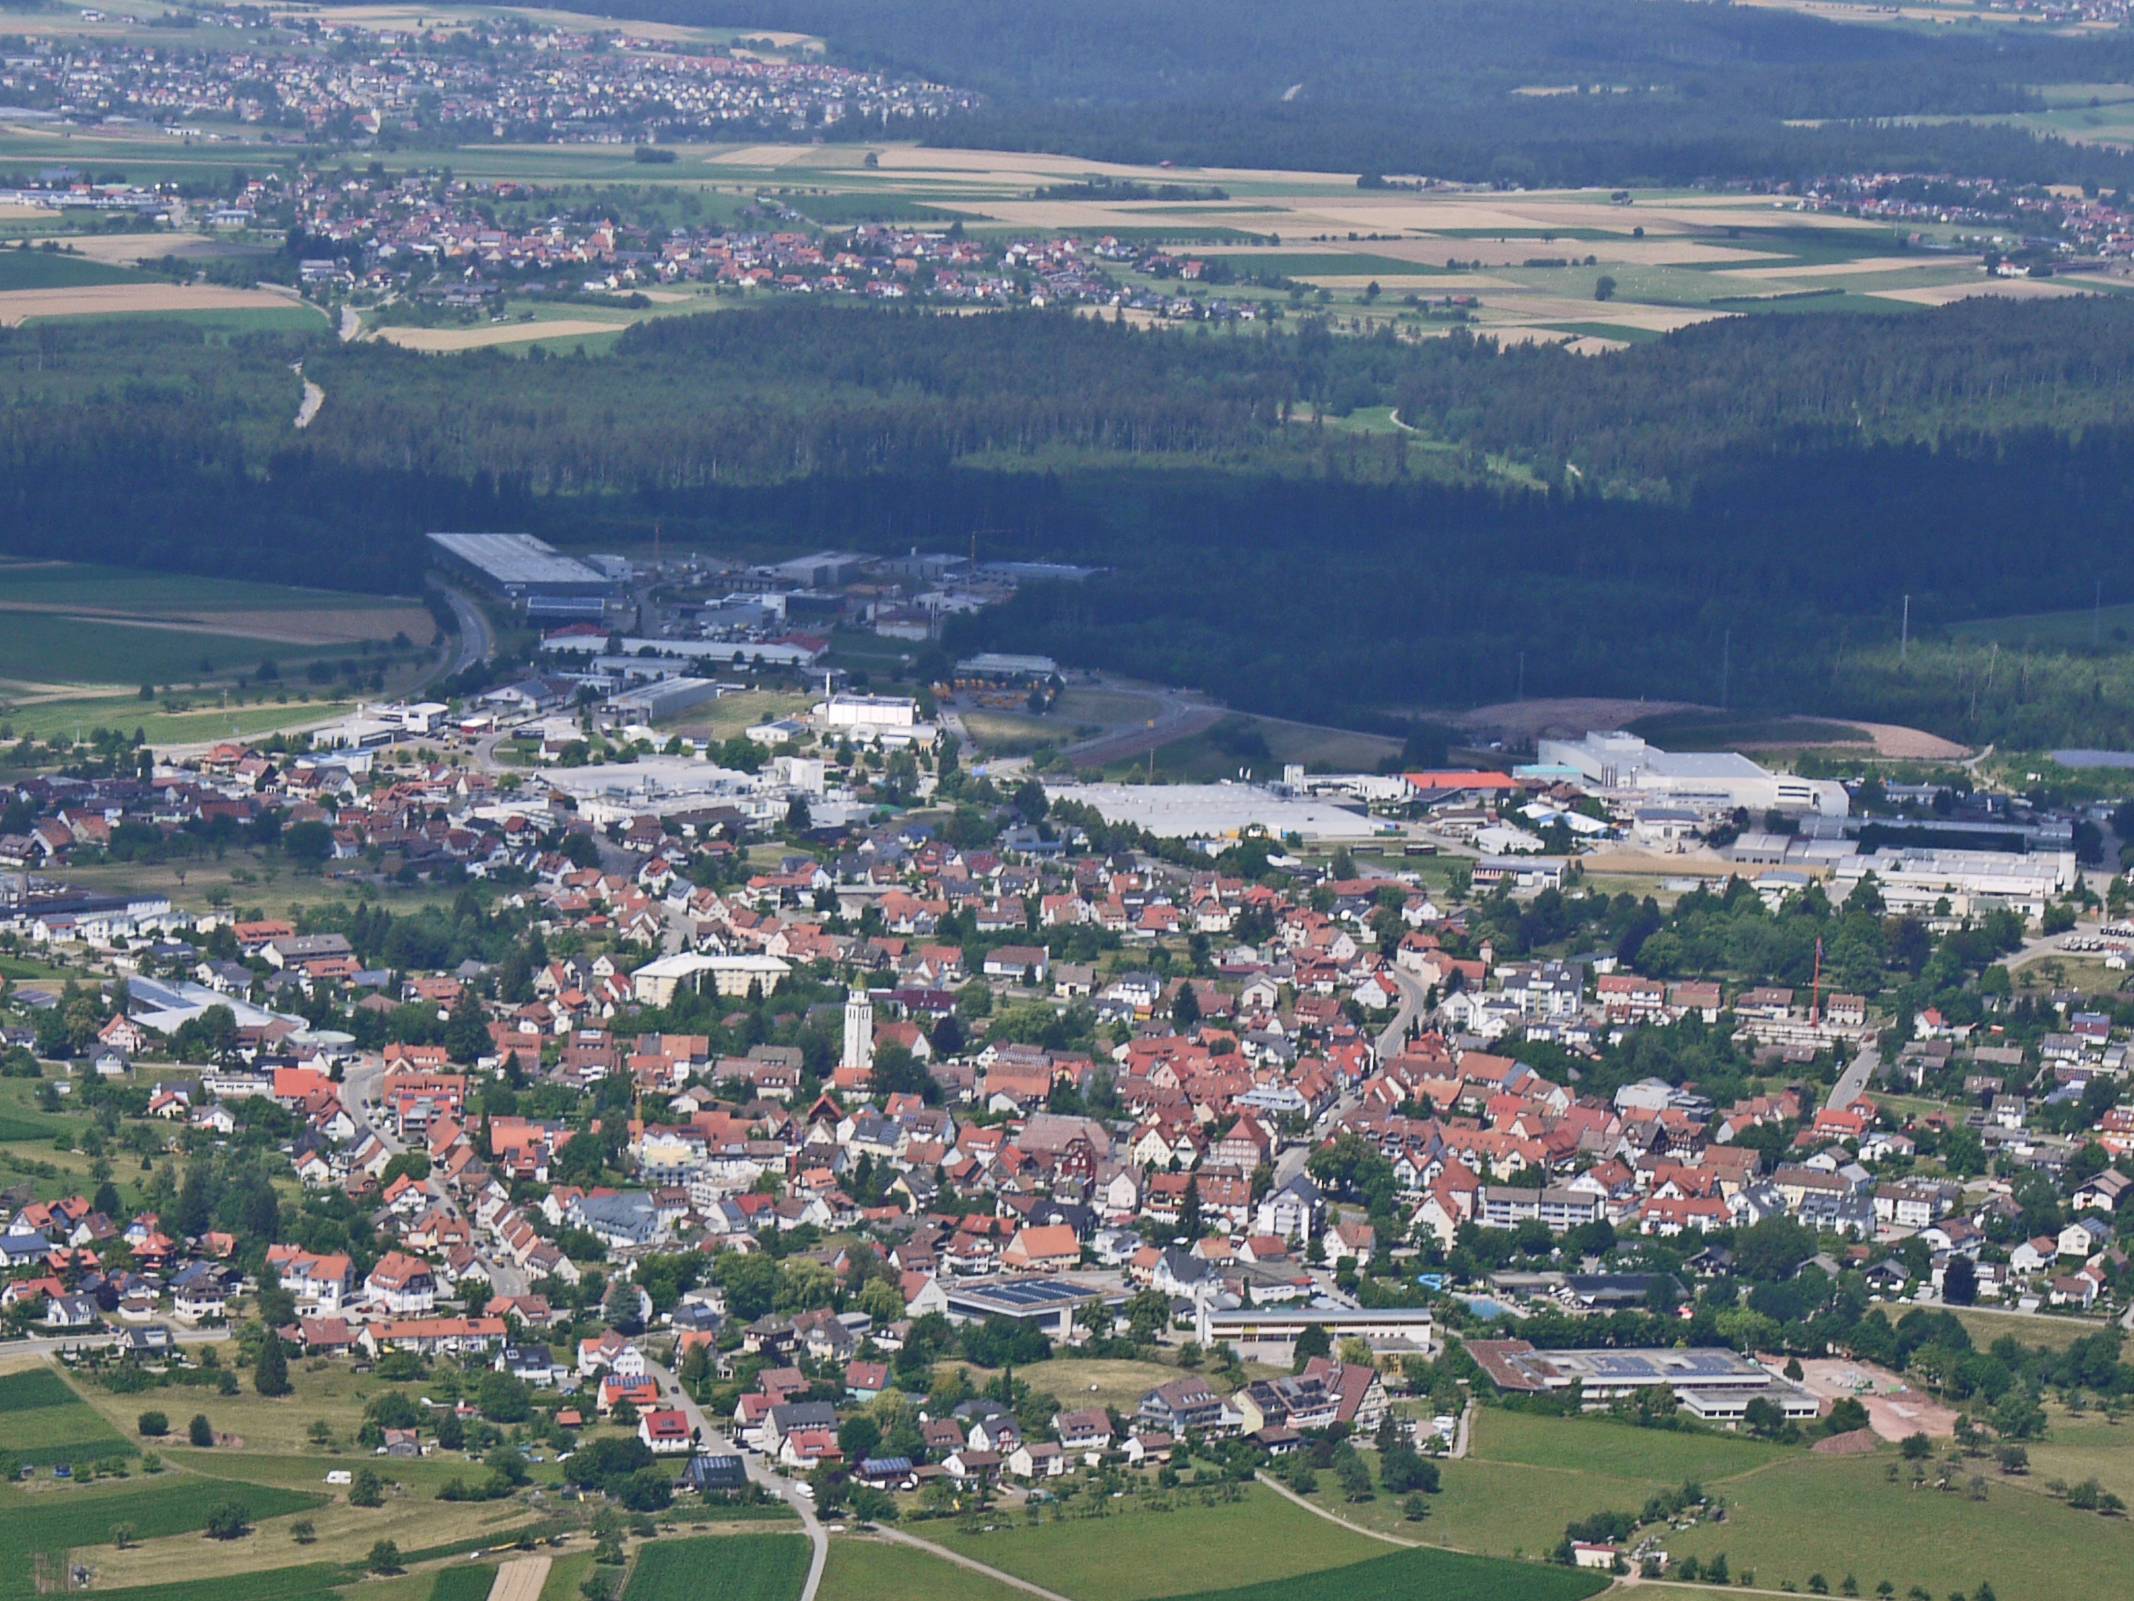  Luftbild Pfalzgrafenweiler mit Gewerbegebiet - Helmut Genkinger Pfalzgrafenweiler 